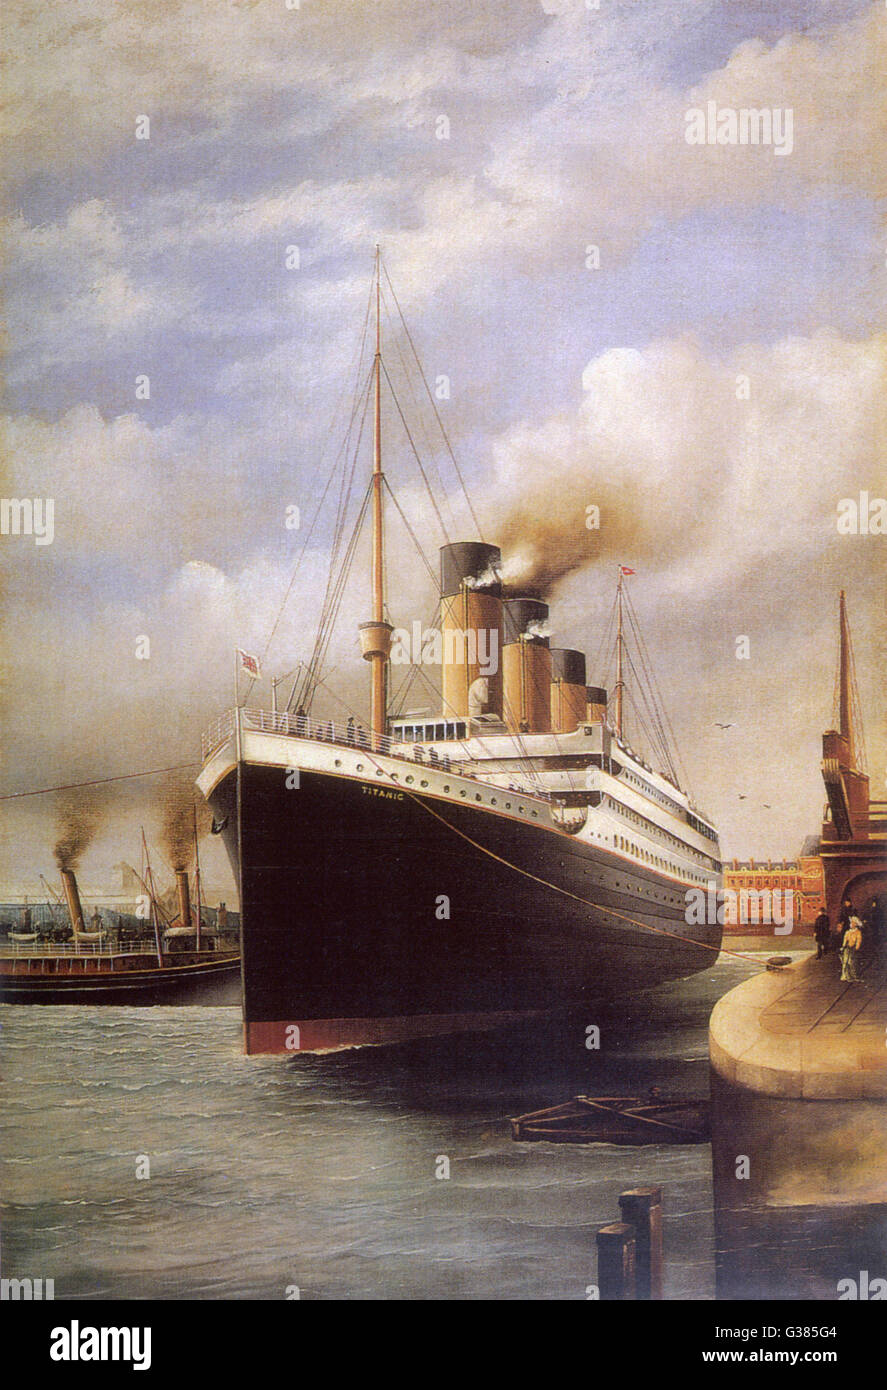 Le Titanic à quai avant son voyage désastreux Date : 1912 Banque D'Images